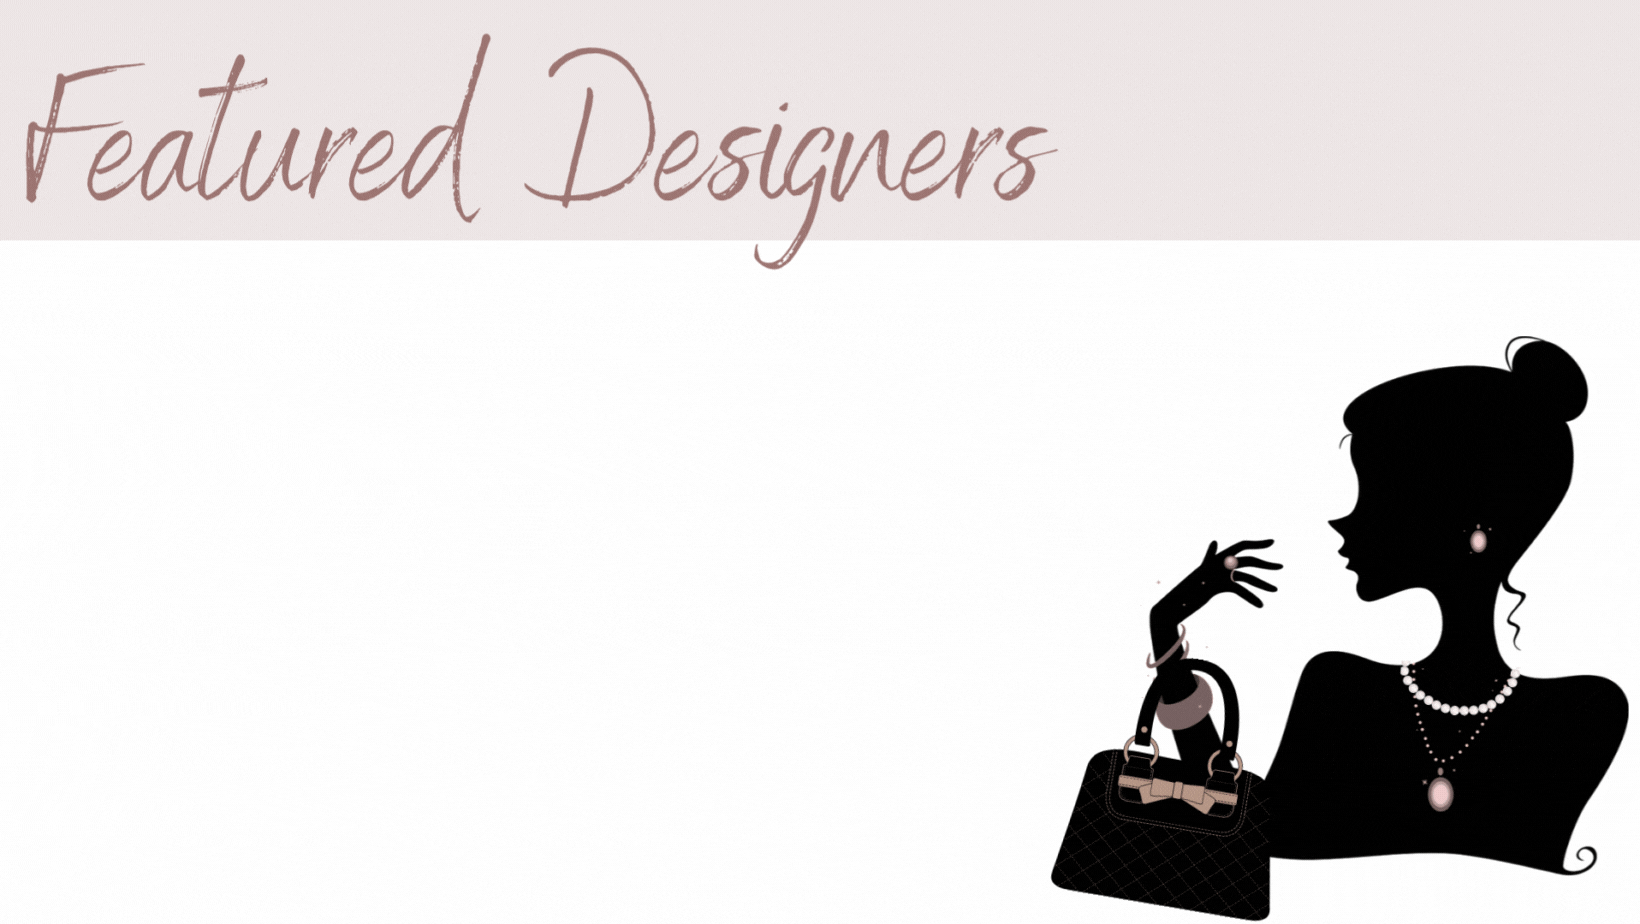 featured designers